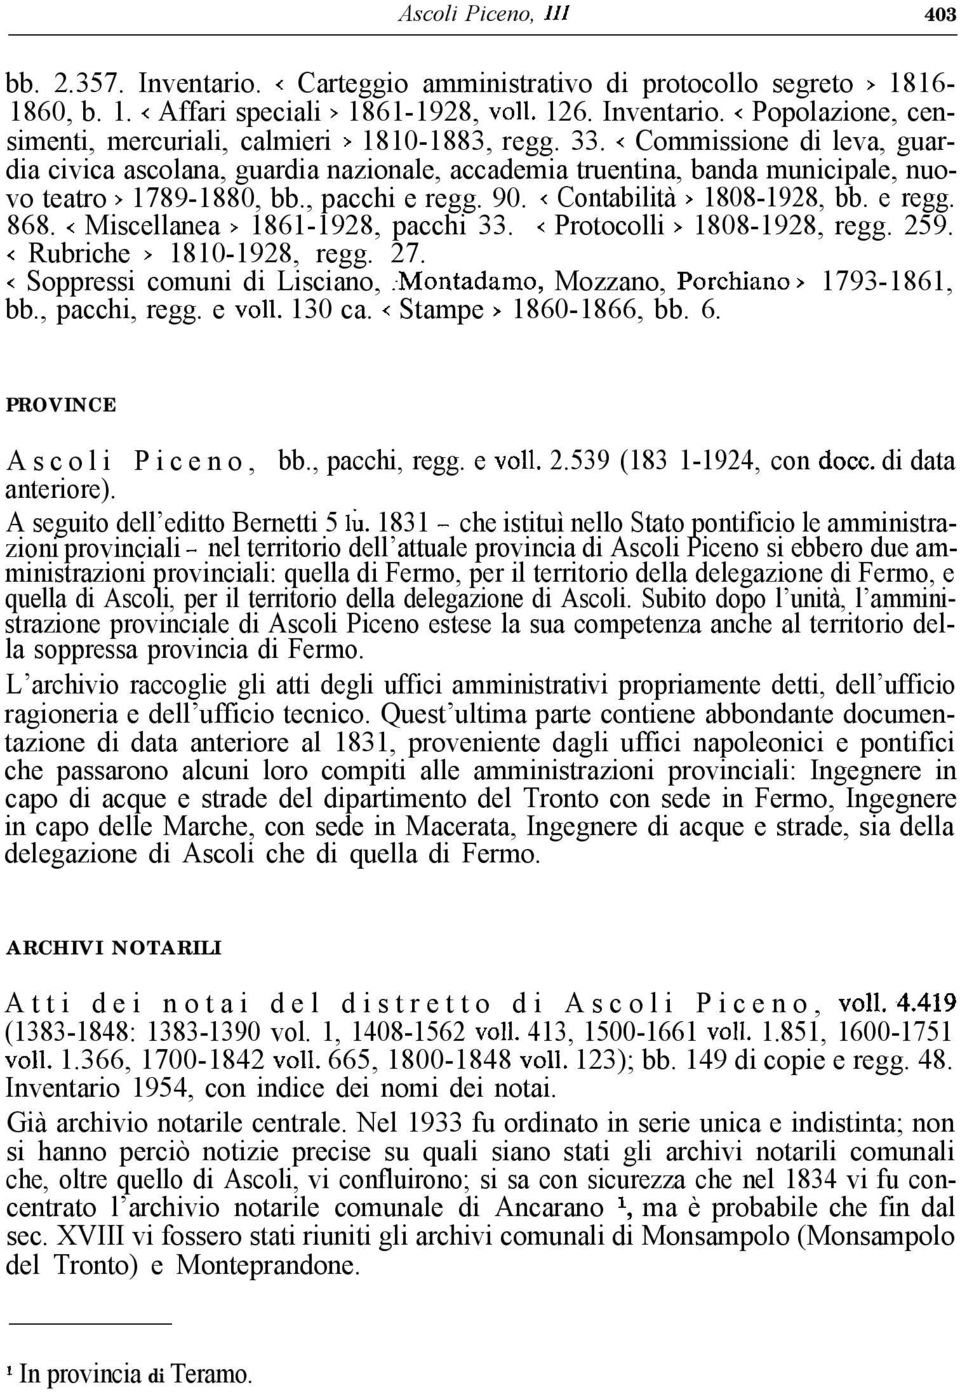 < Miscellanea > 1861-1928, pacchi 33. < Protocolli > 1808-1928, regg. 259. < Rubriche > 1810-1928, regg. 27. < Soppressi comuni di Lisciano, :Montadamo, Mozzano, Porchiano > 1793-1861, bb.